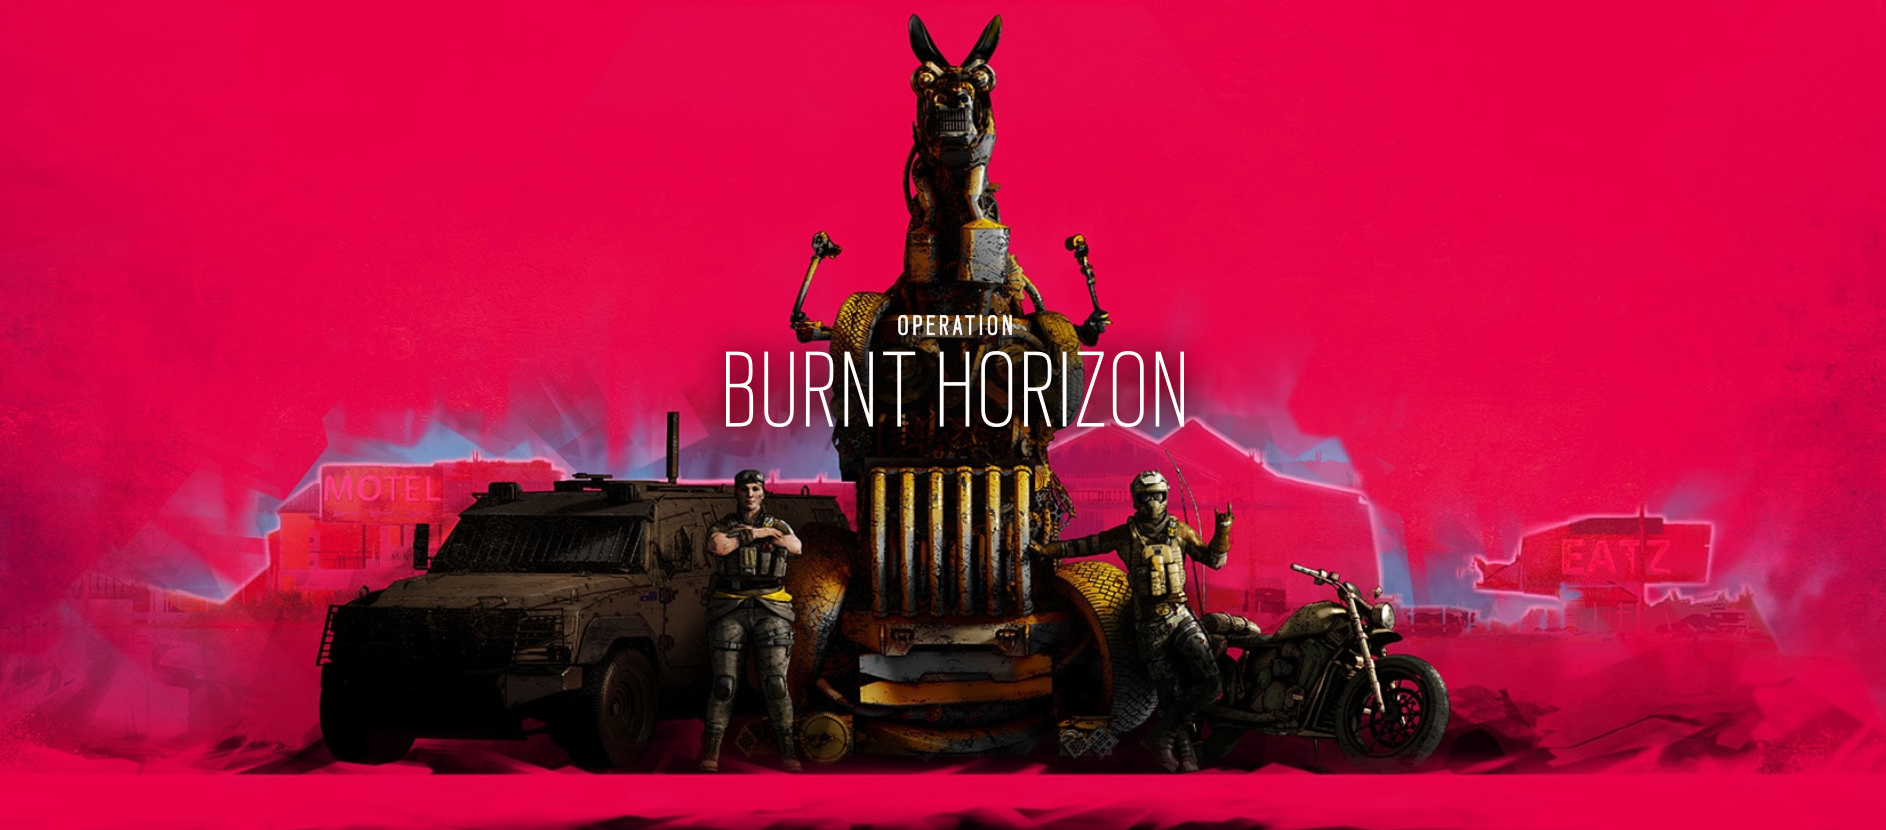 Ubisoft | Burnt Horizon chegou em R6 Siege confira as novidades